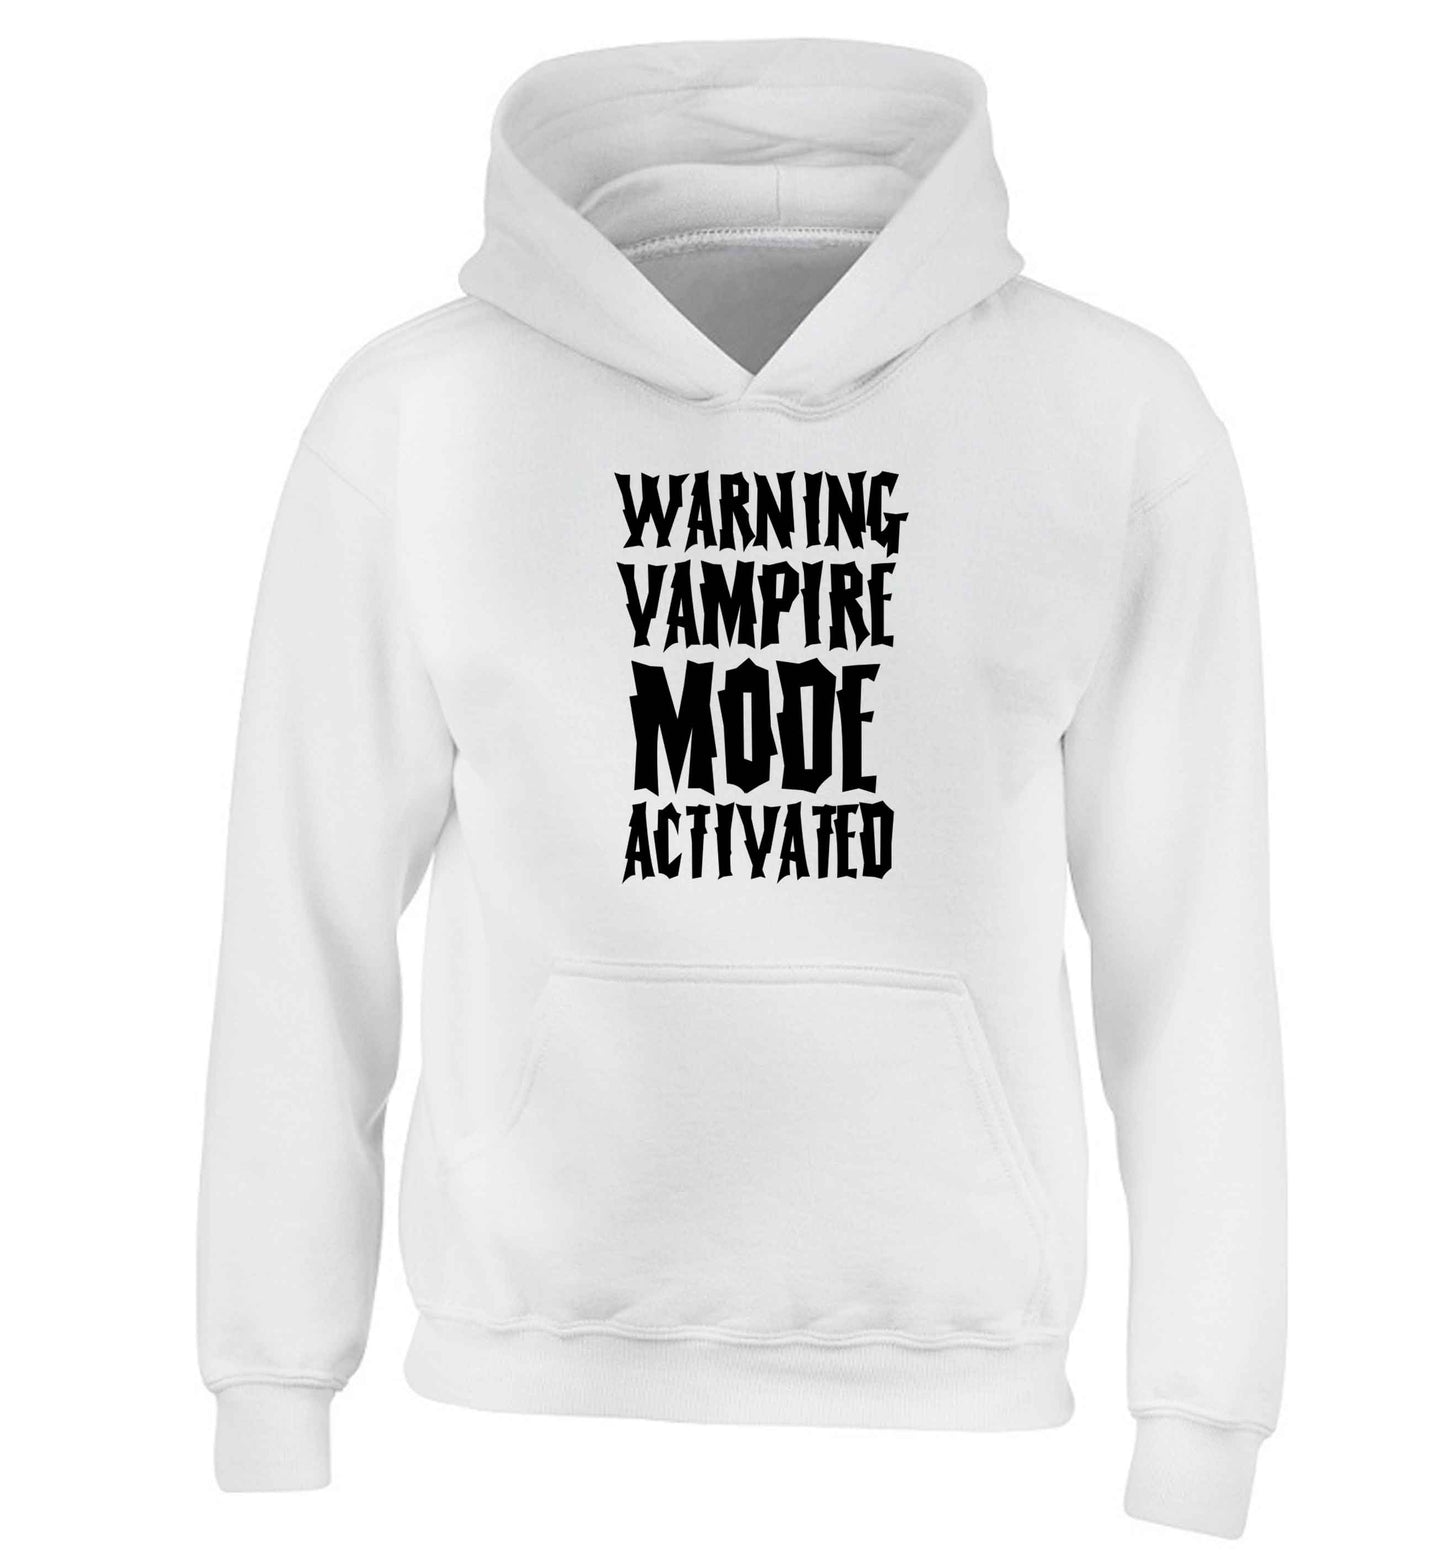 Warning vampire mode activated children's white hoodie 12-13 Years